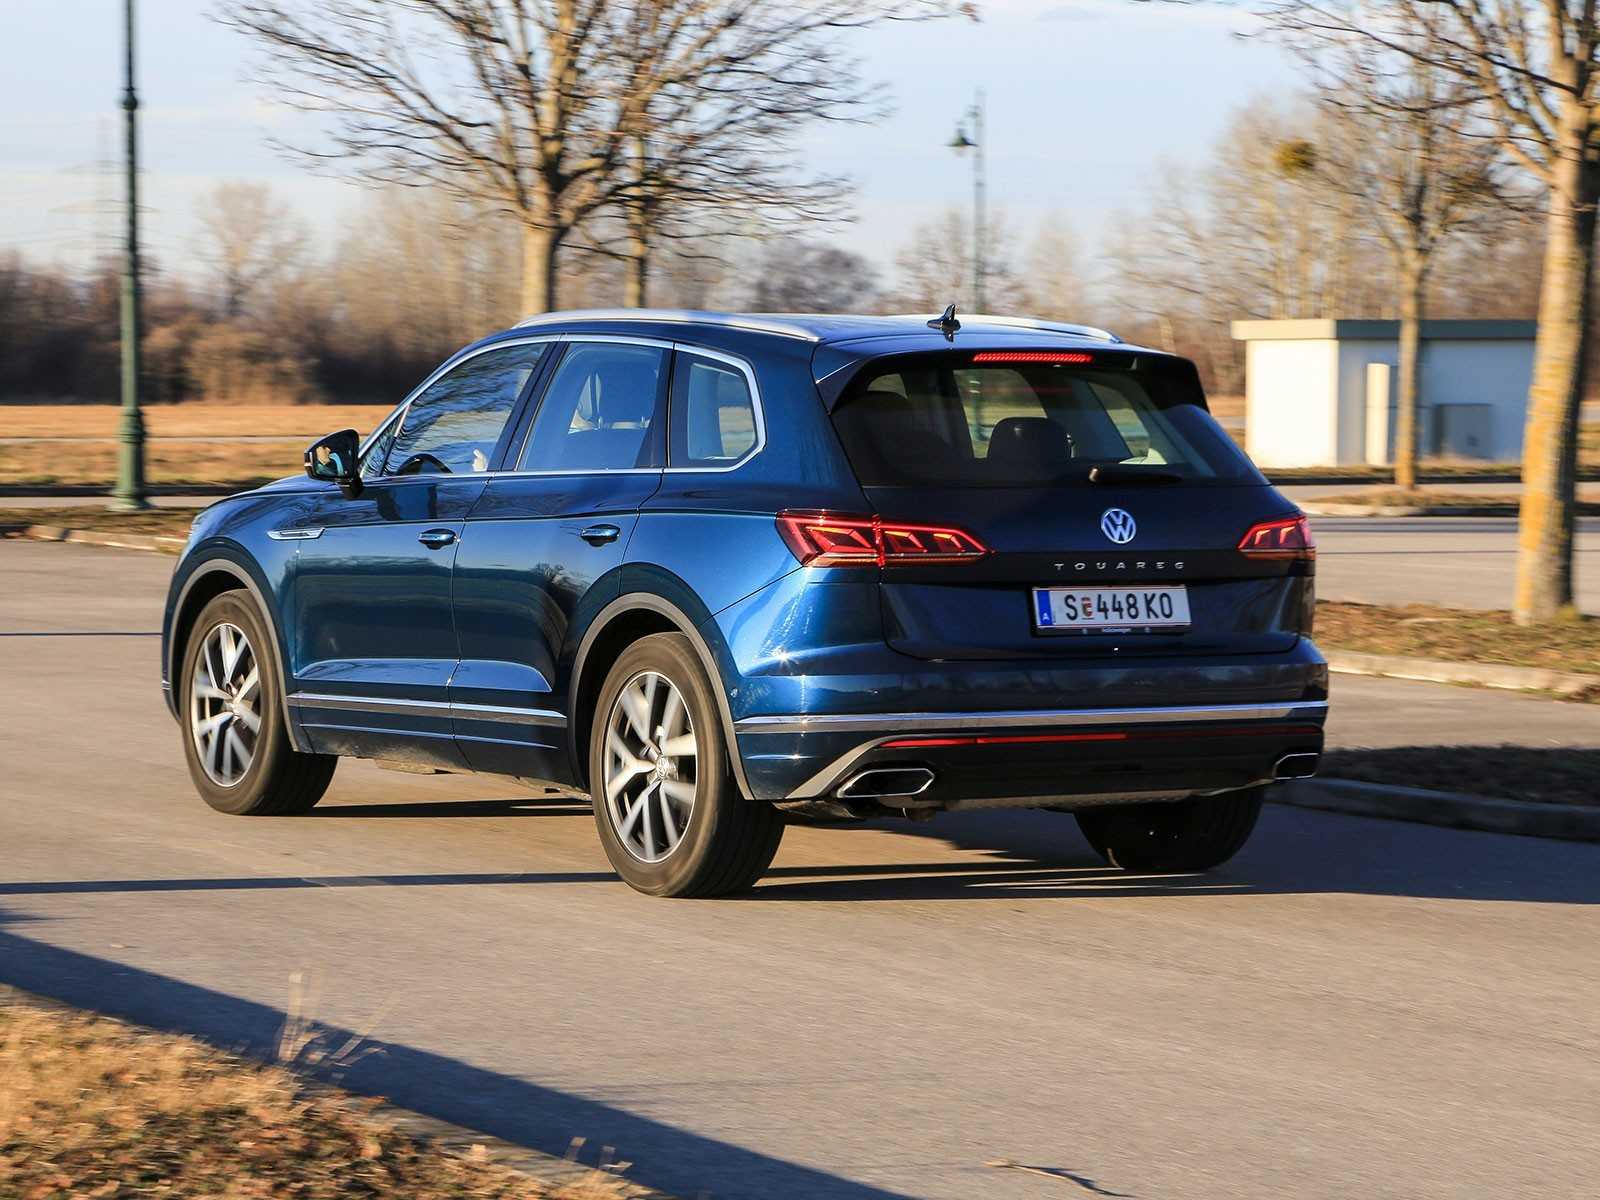 Volkswagen touareg 2021: премиум-внедорожник в классической кроссоверной компоновке